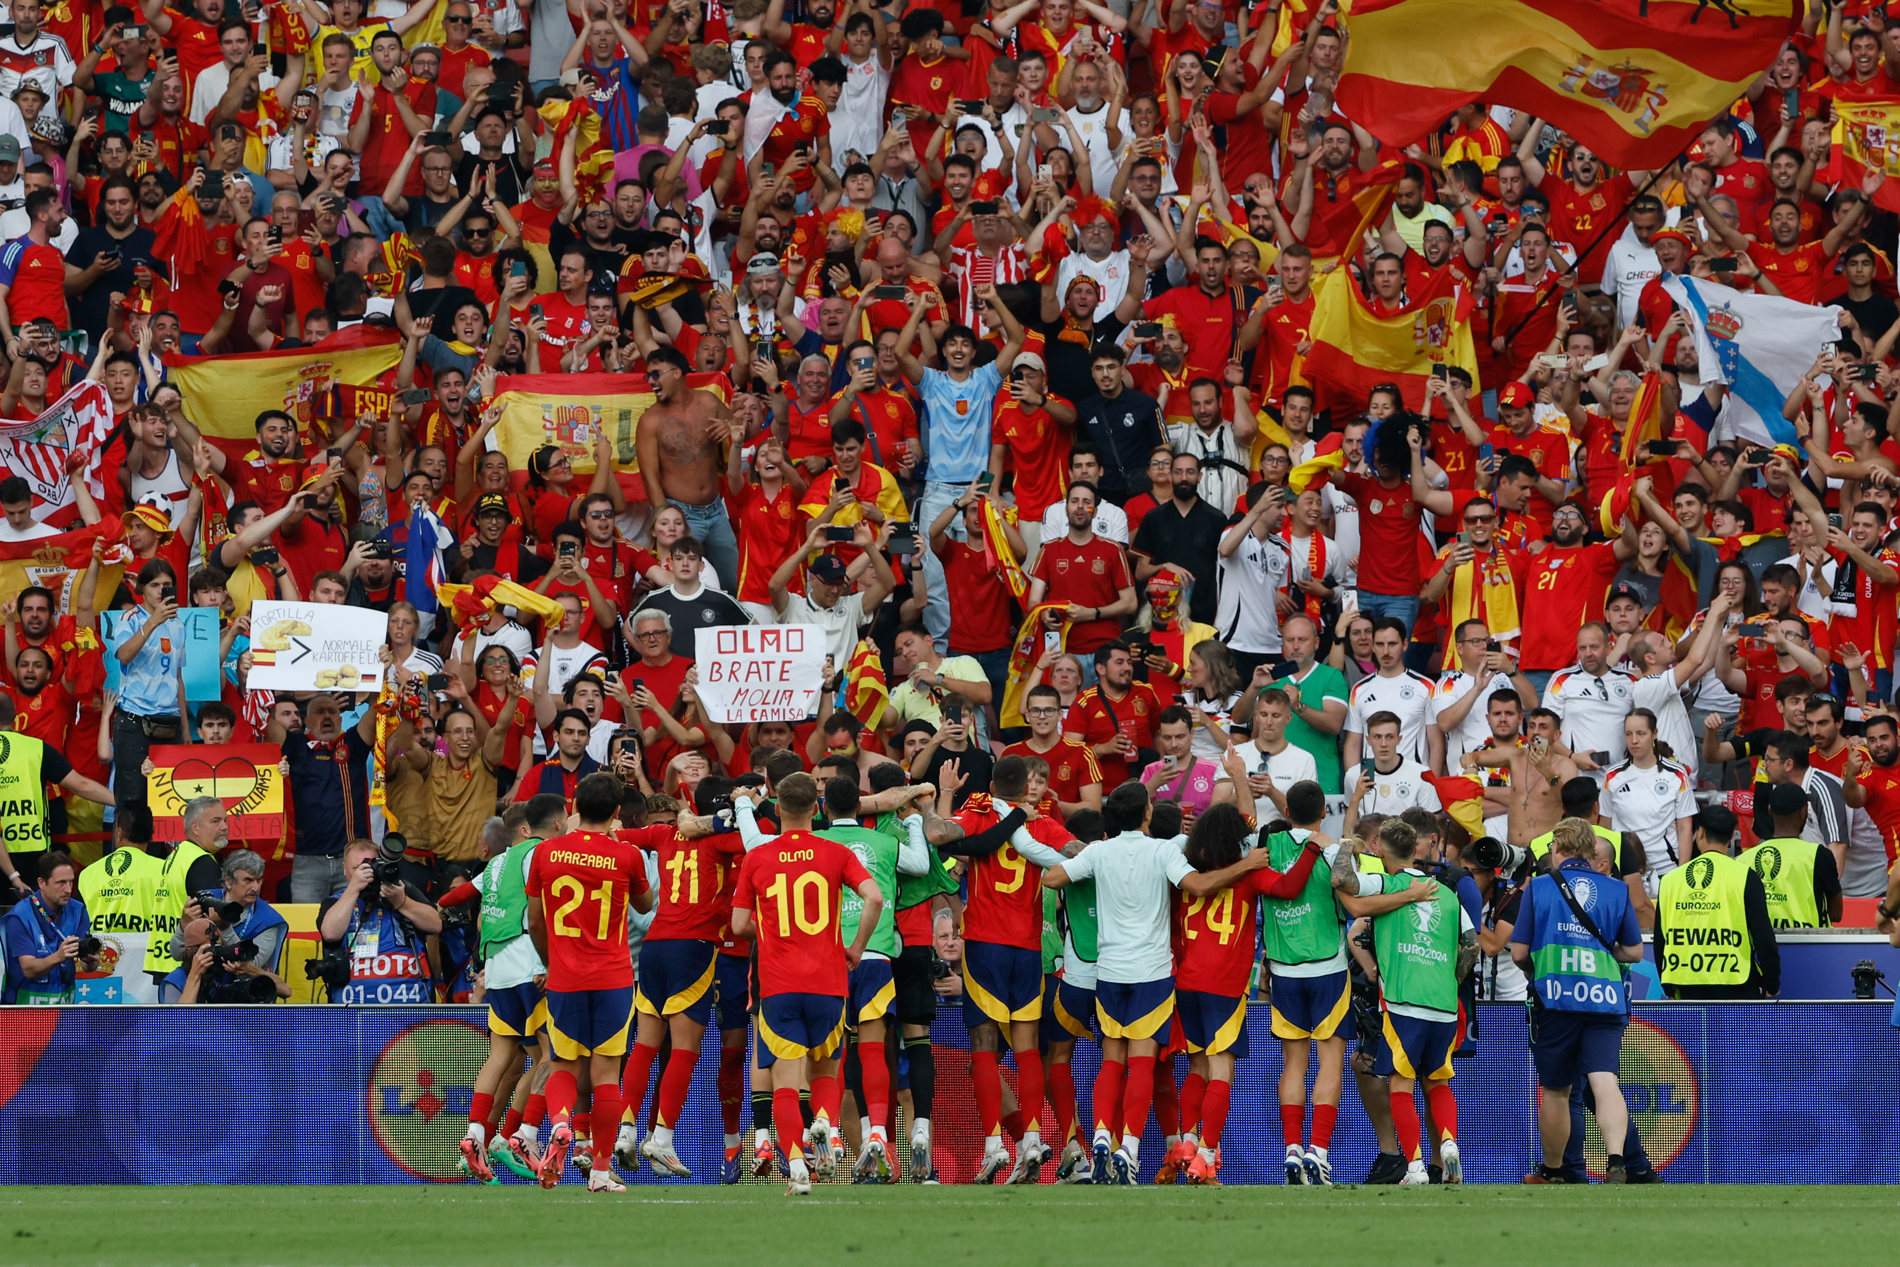 Grandilocuencia en unas portadas futbolísticas a mayor gloria de la selección española